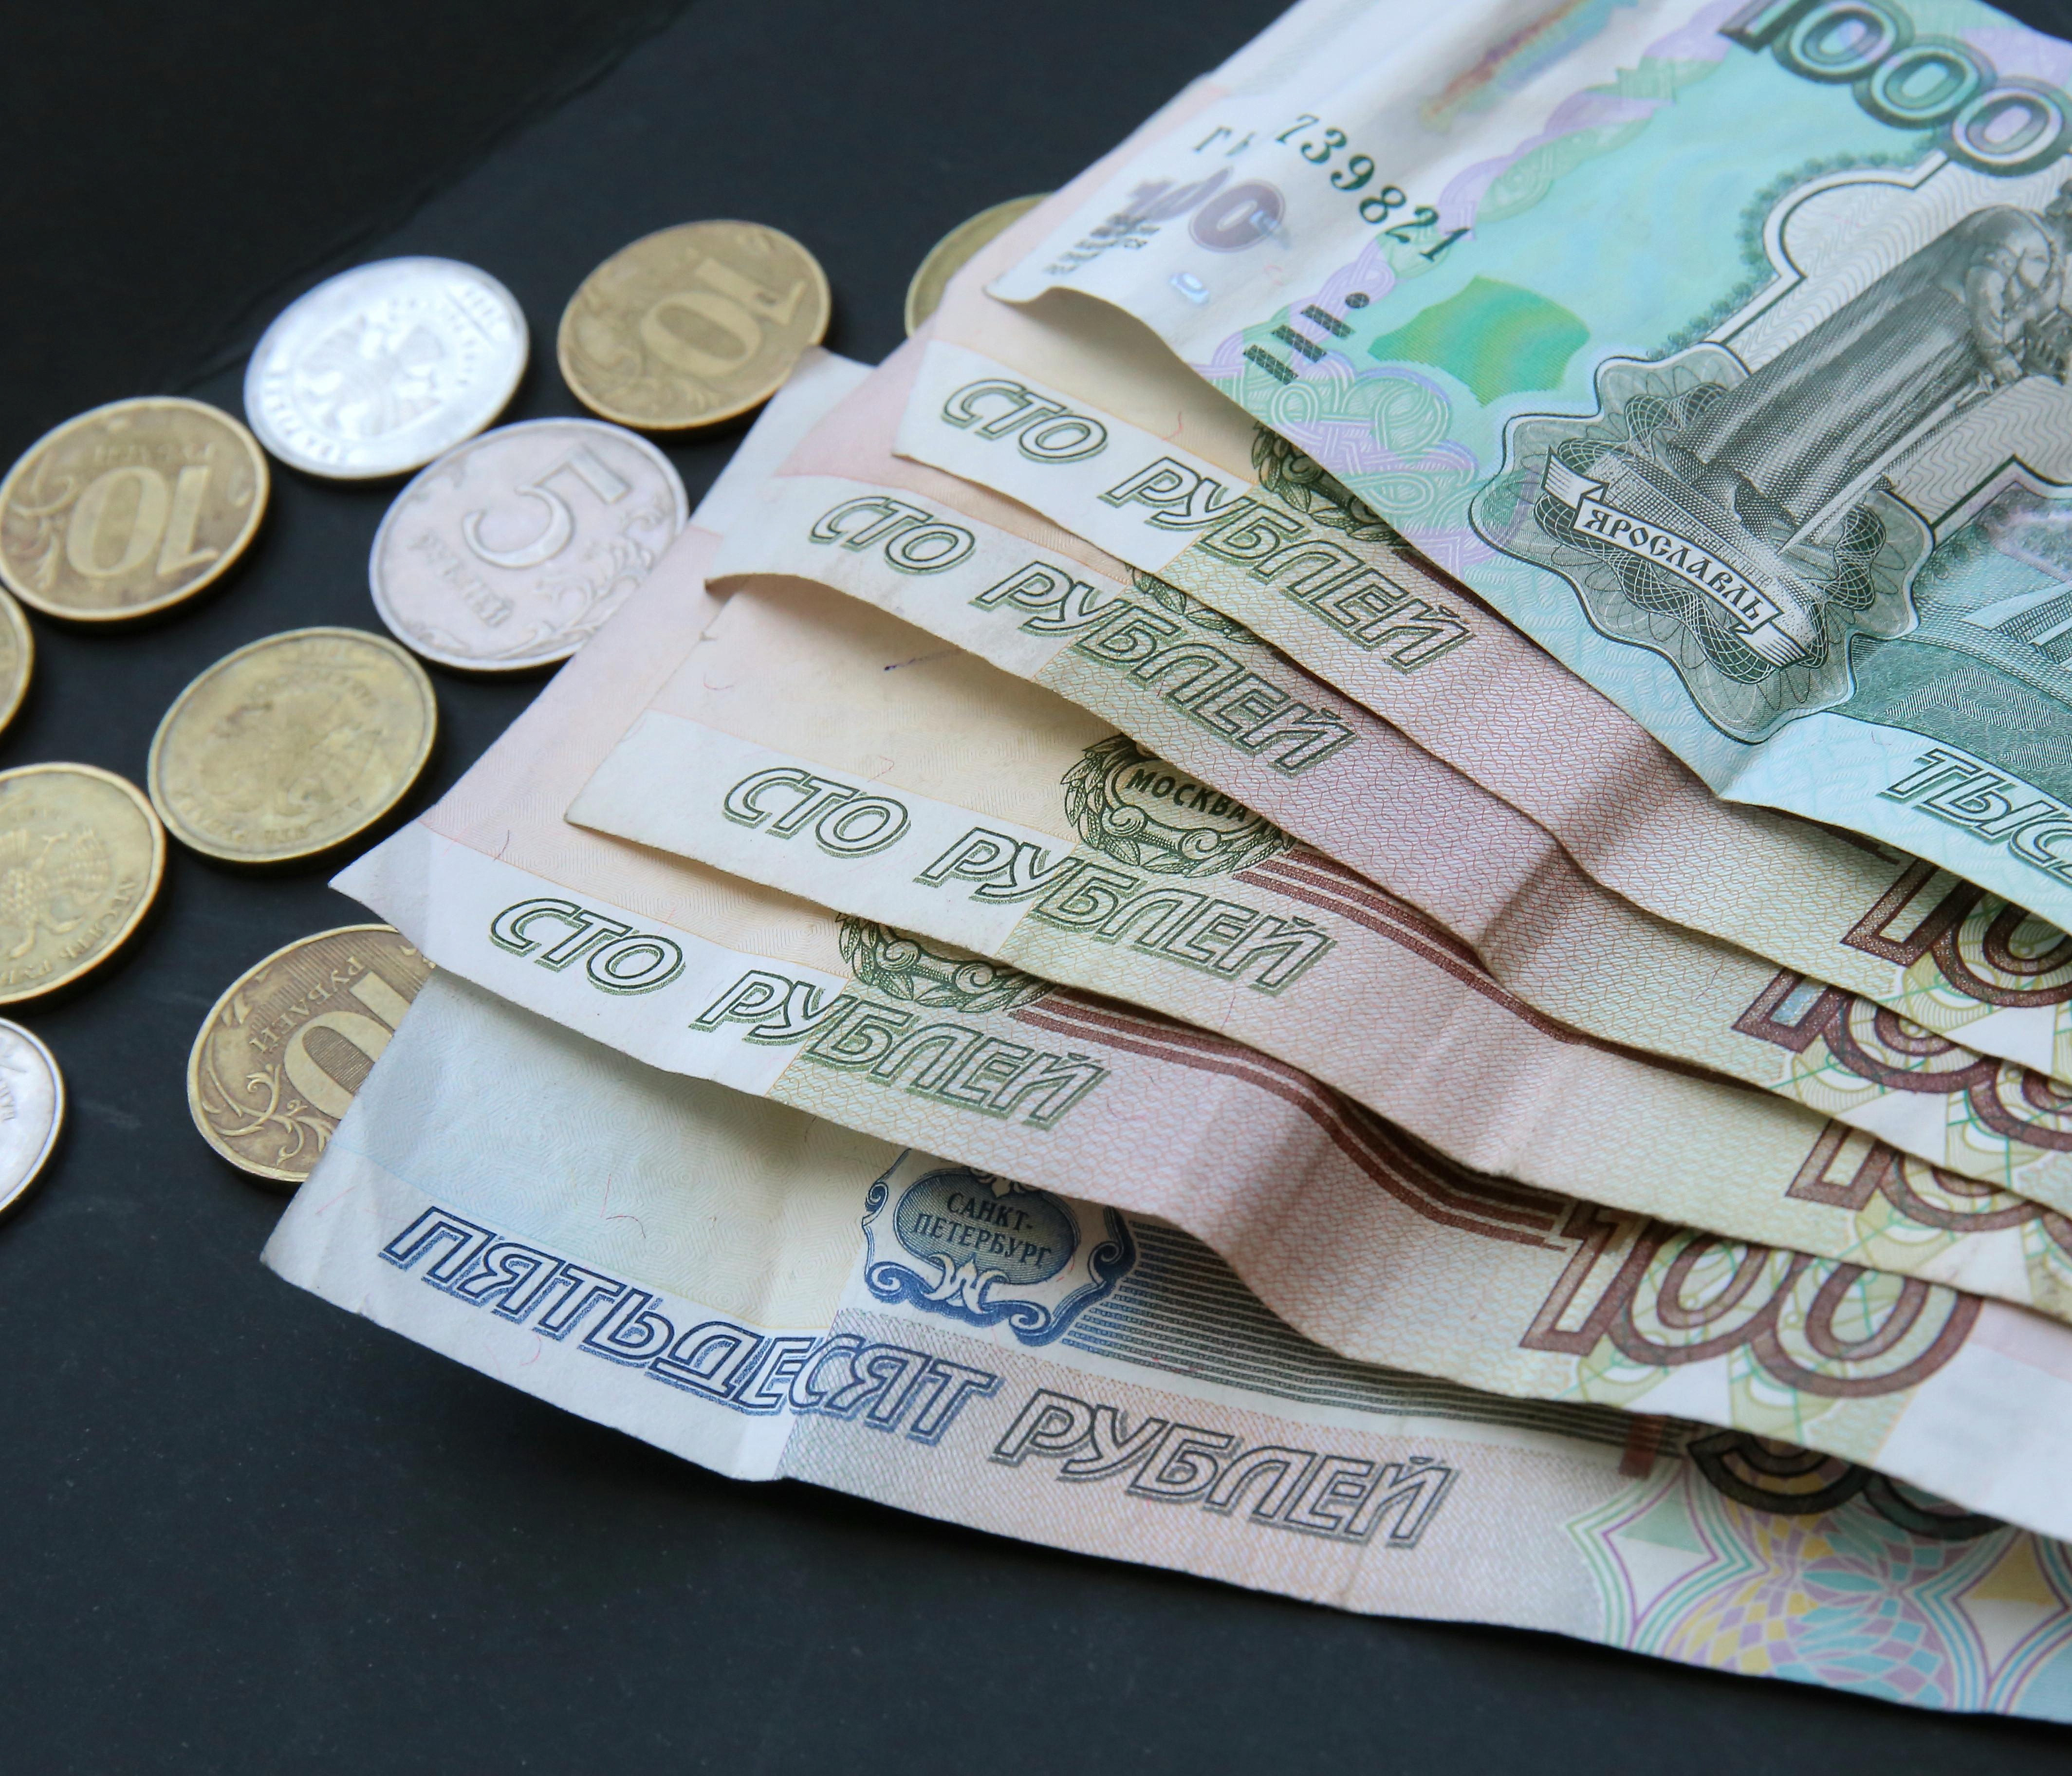 За год на 32% подросли предлагаемые зарплаты в Новосибирской области